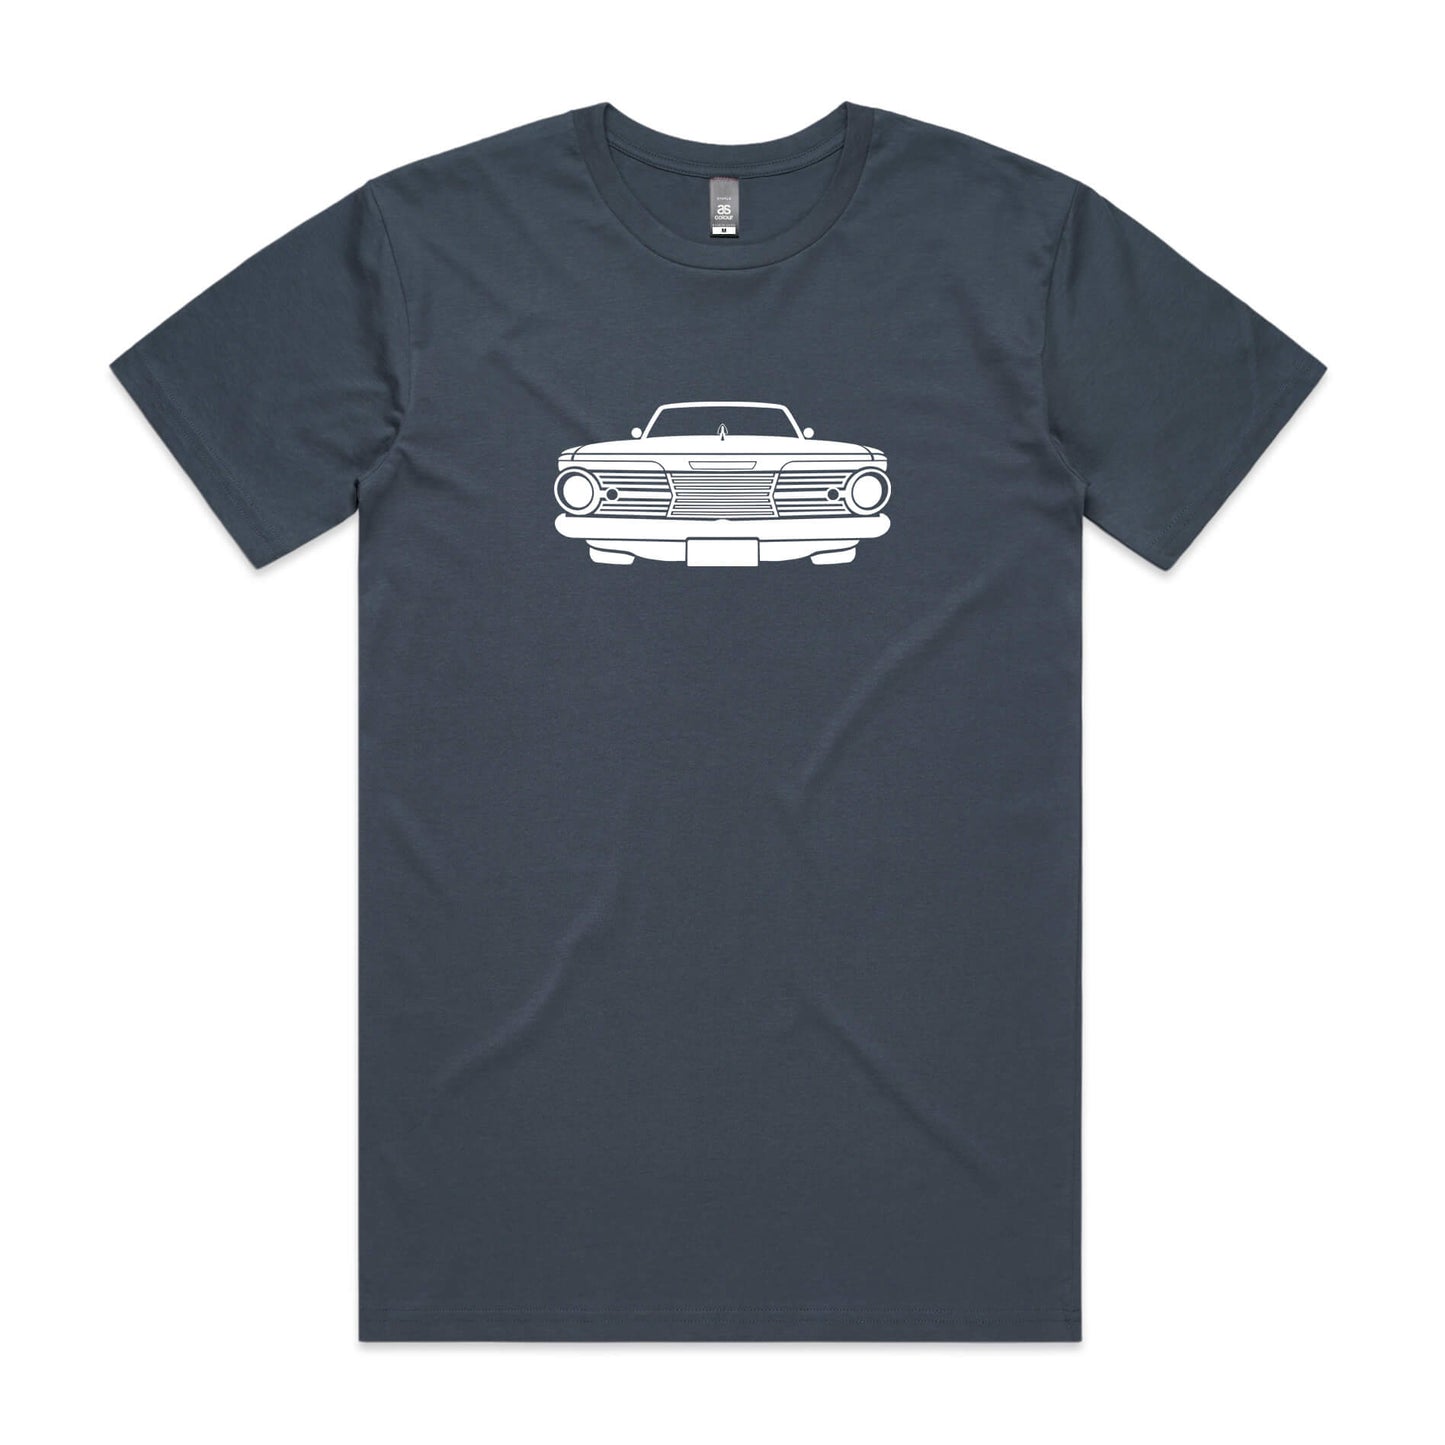 Chrysler Valiant AP6 t-shirt in petrol blue